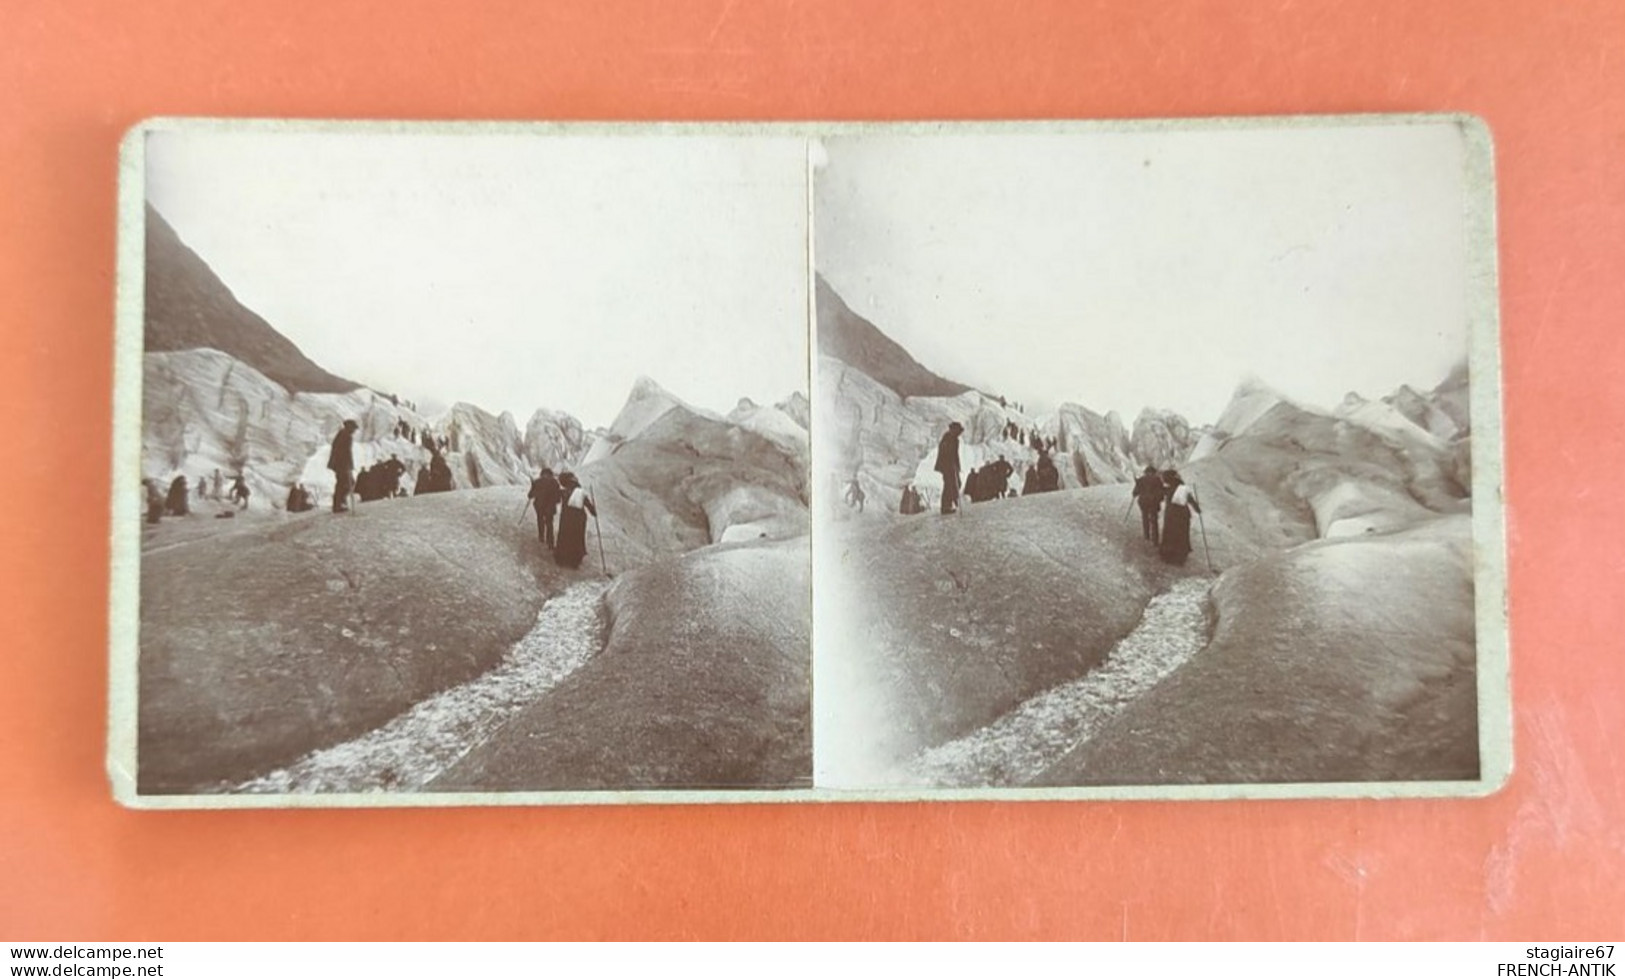 PHOTO STÉRÉO LA MER DE GLACE 1910 - Stereo-Photographie